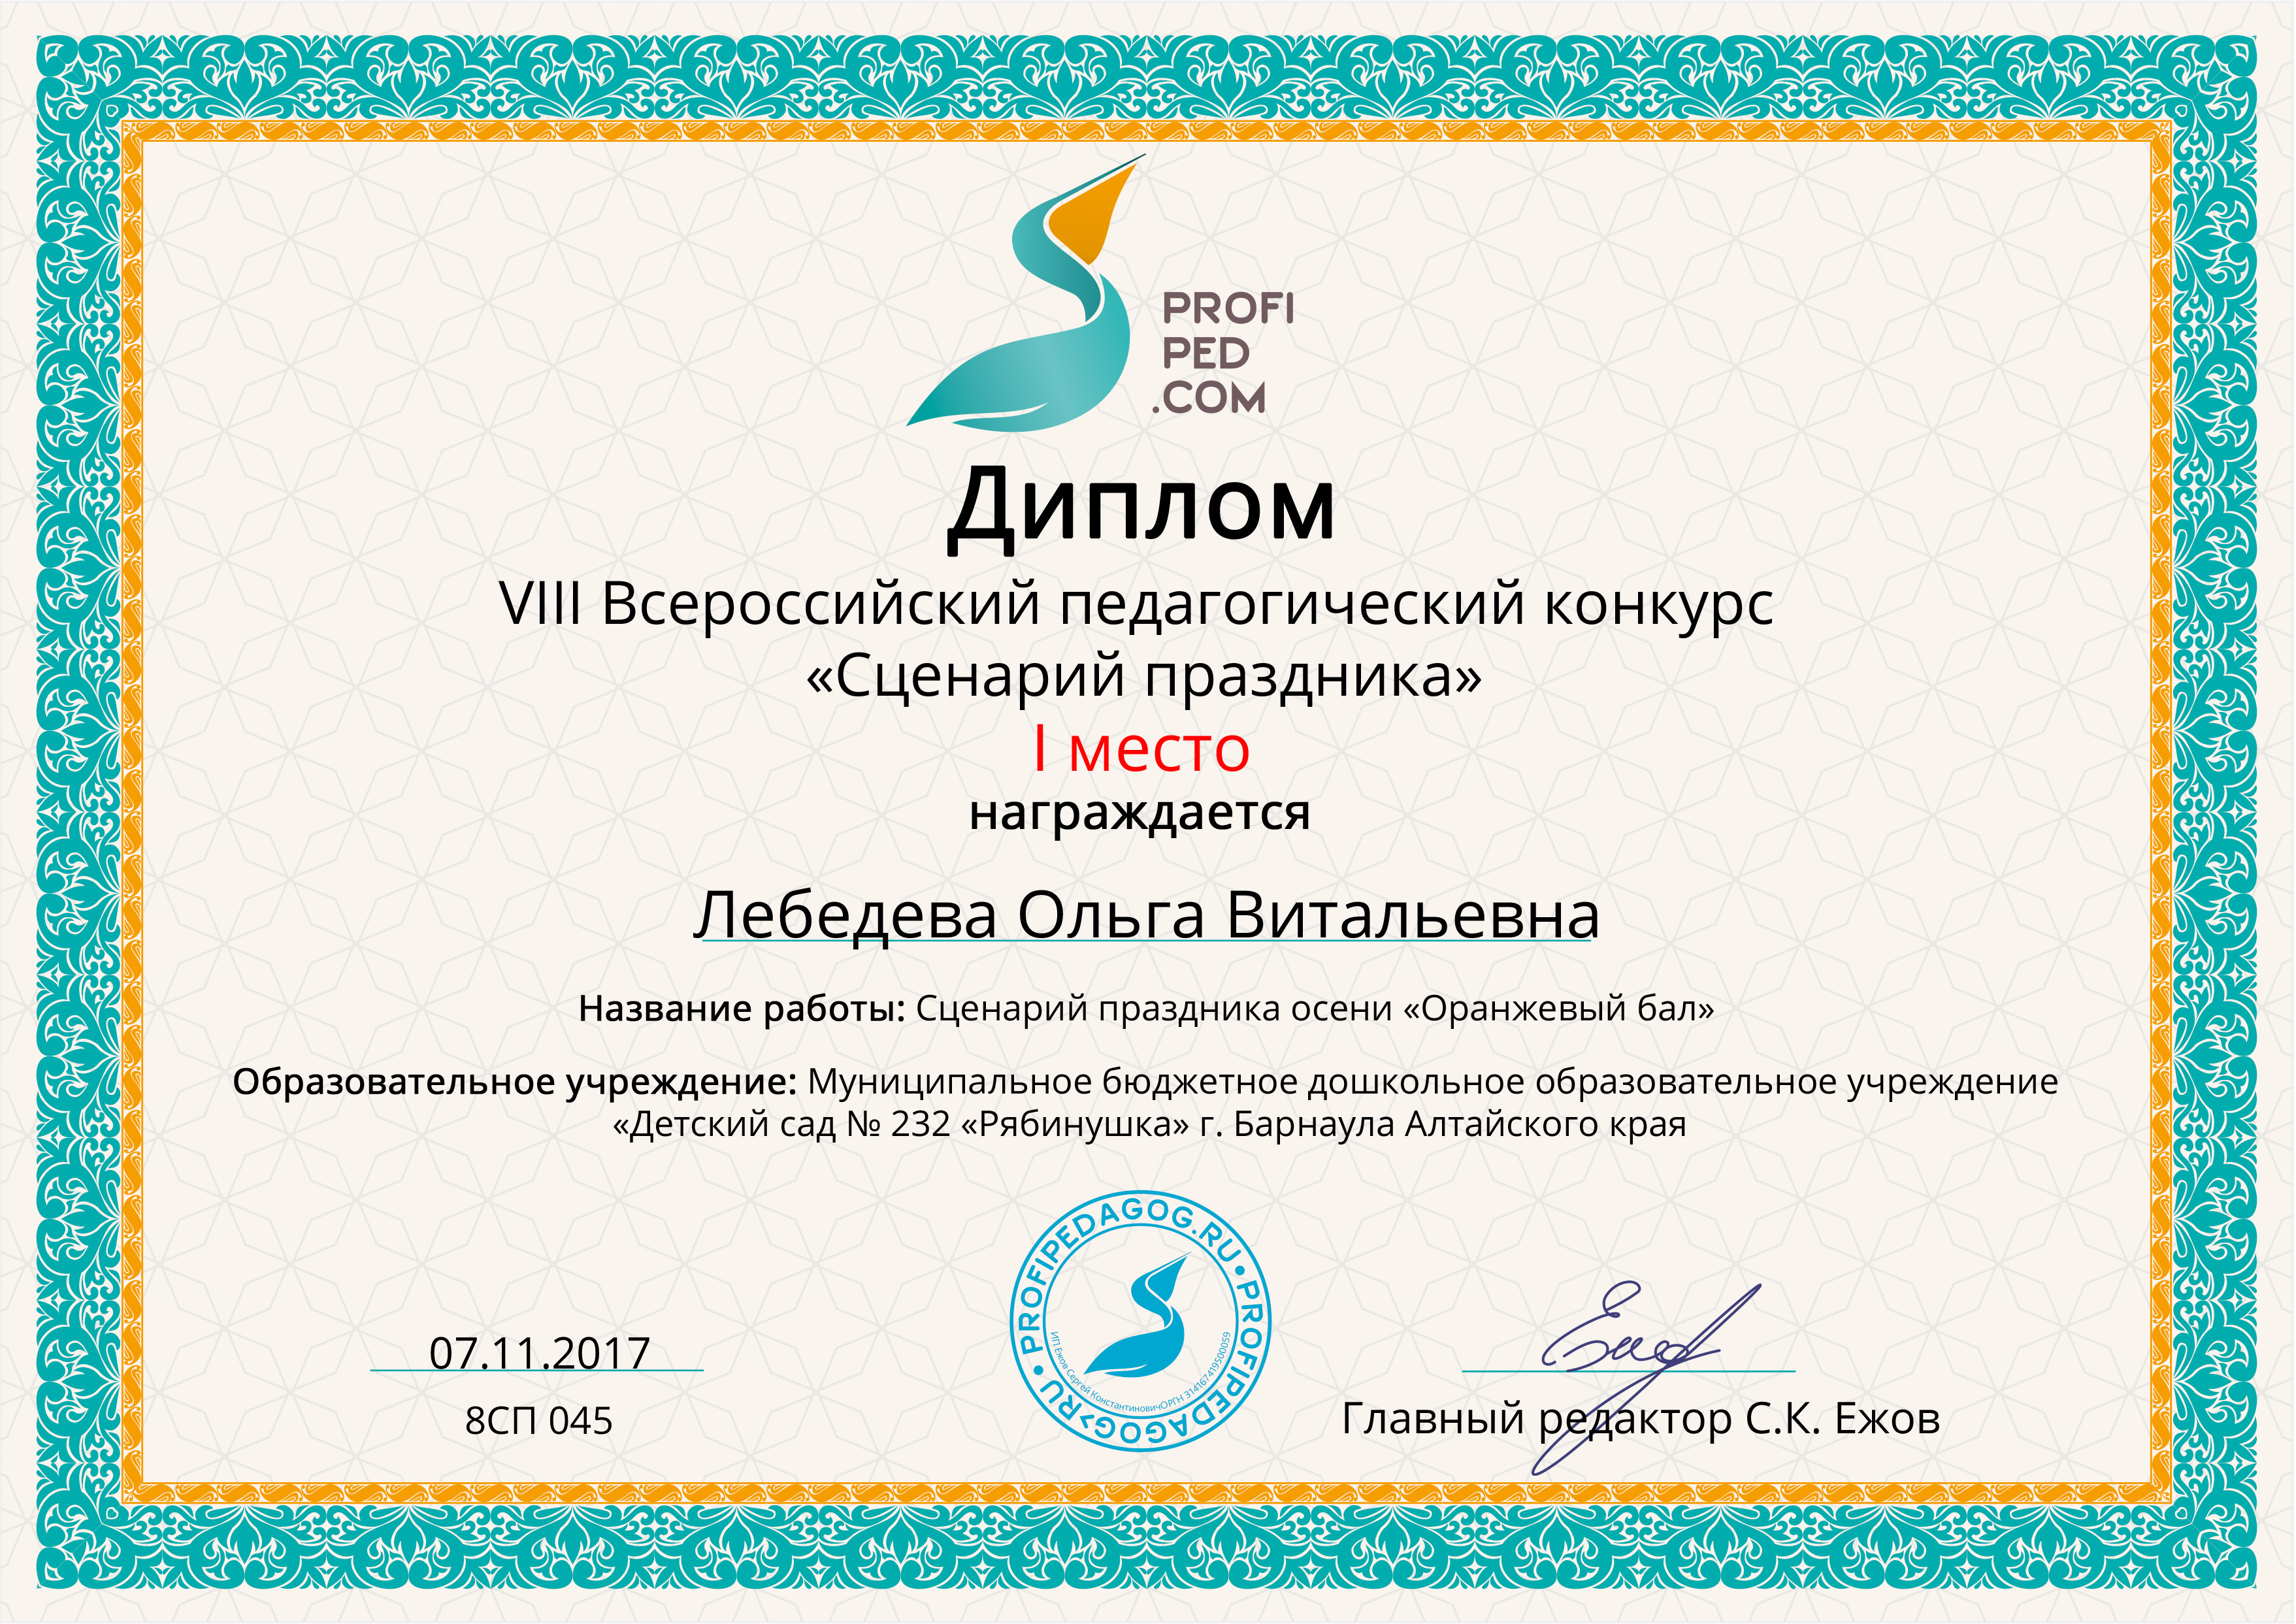 Диплом-конкурса-Сценарий-праздника-Профипедком-2017г